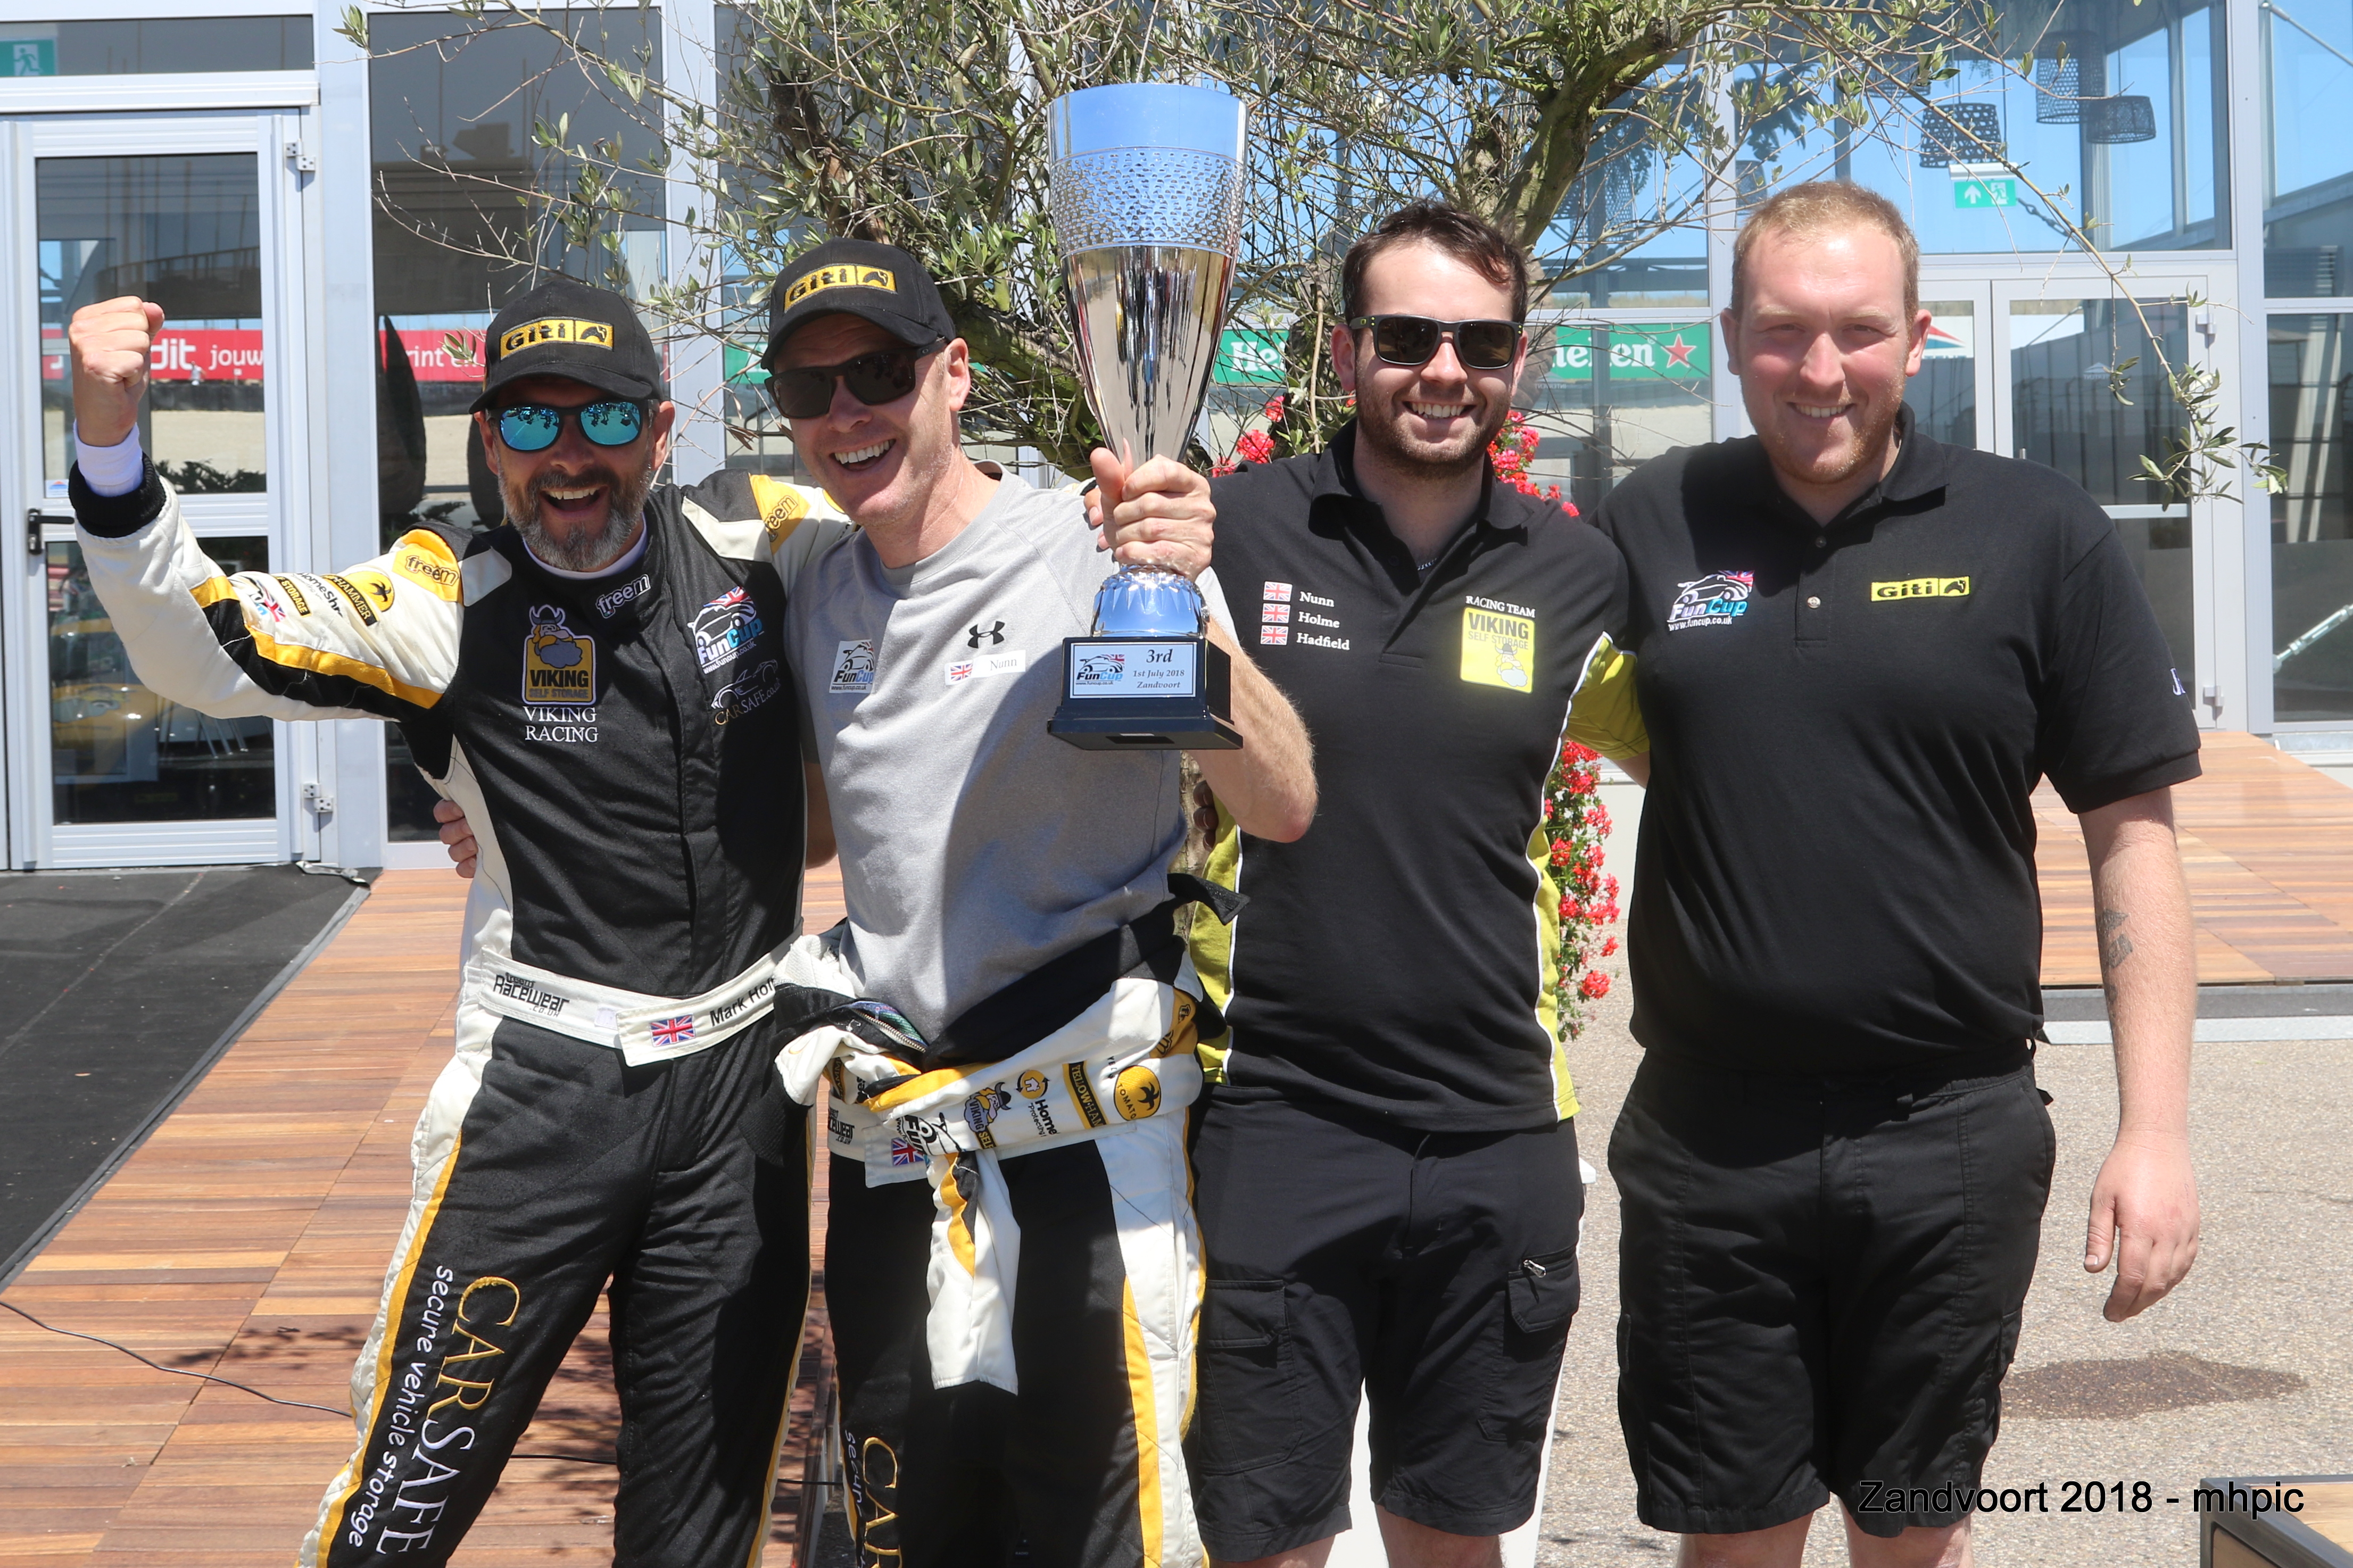 Team Viking claim another podium at the Zandvoort circuit